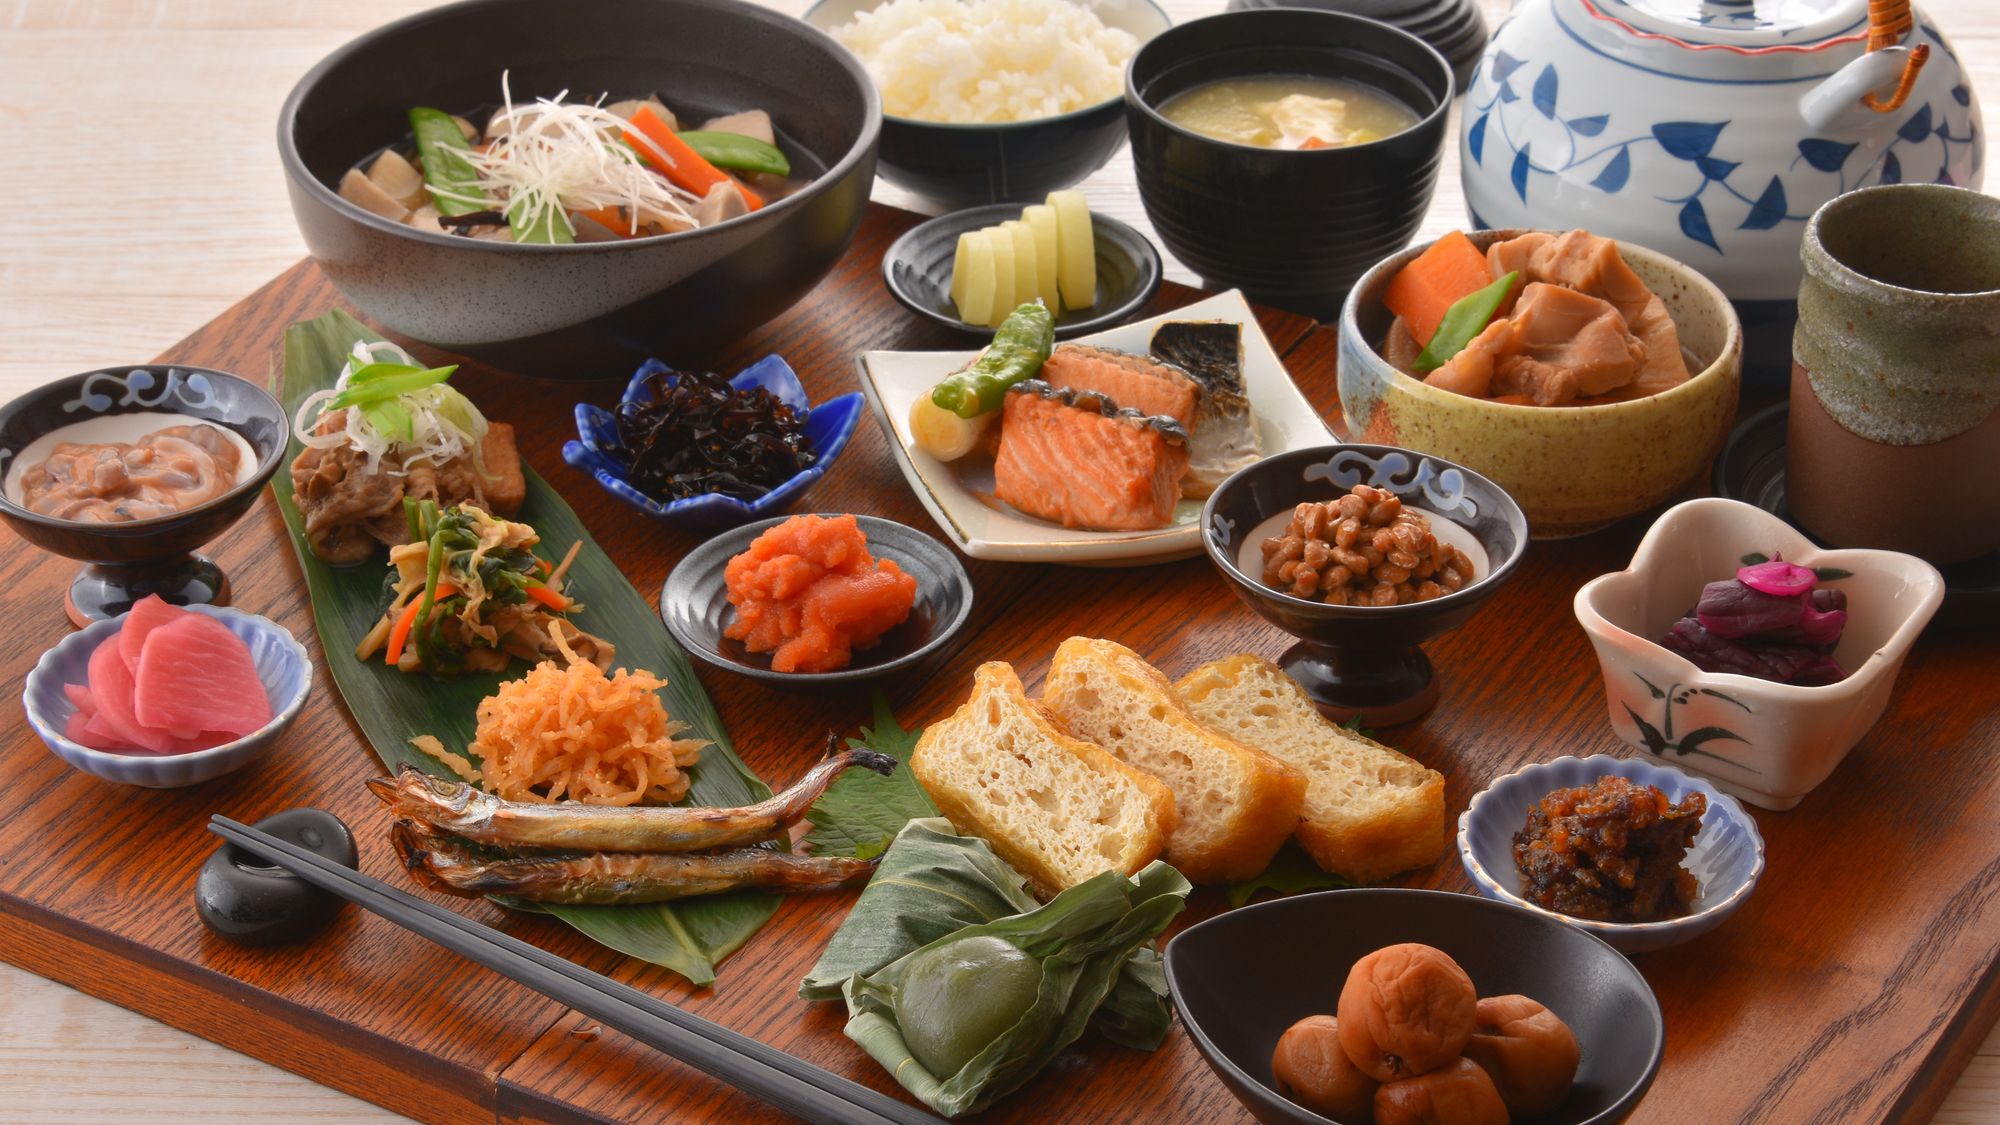 【ベストレート】■新潟駅直結■【朝食付き】お客様評価点4.6以上の朝食を是非ご賞味ください